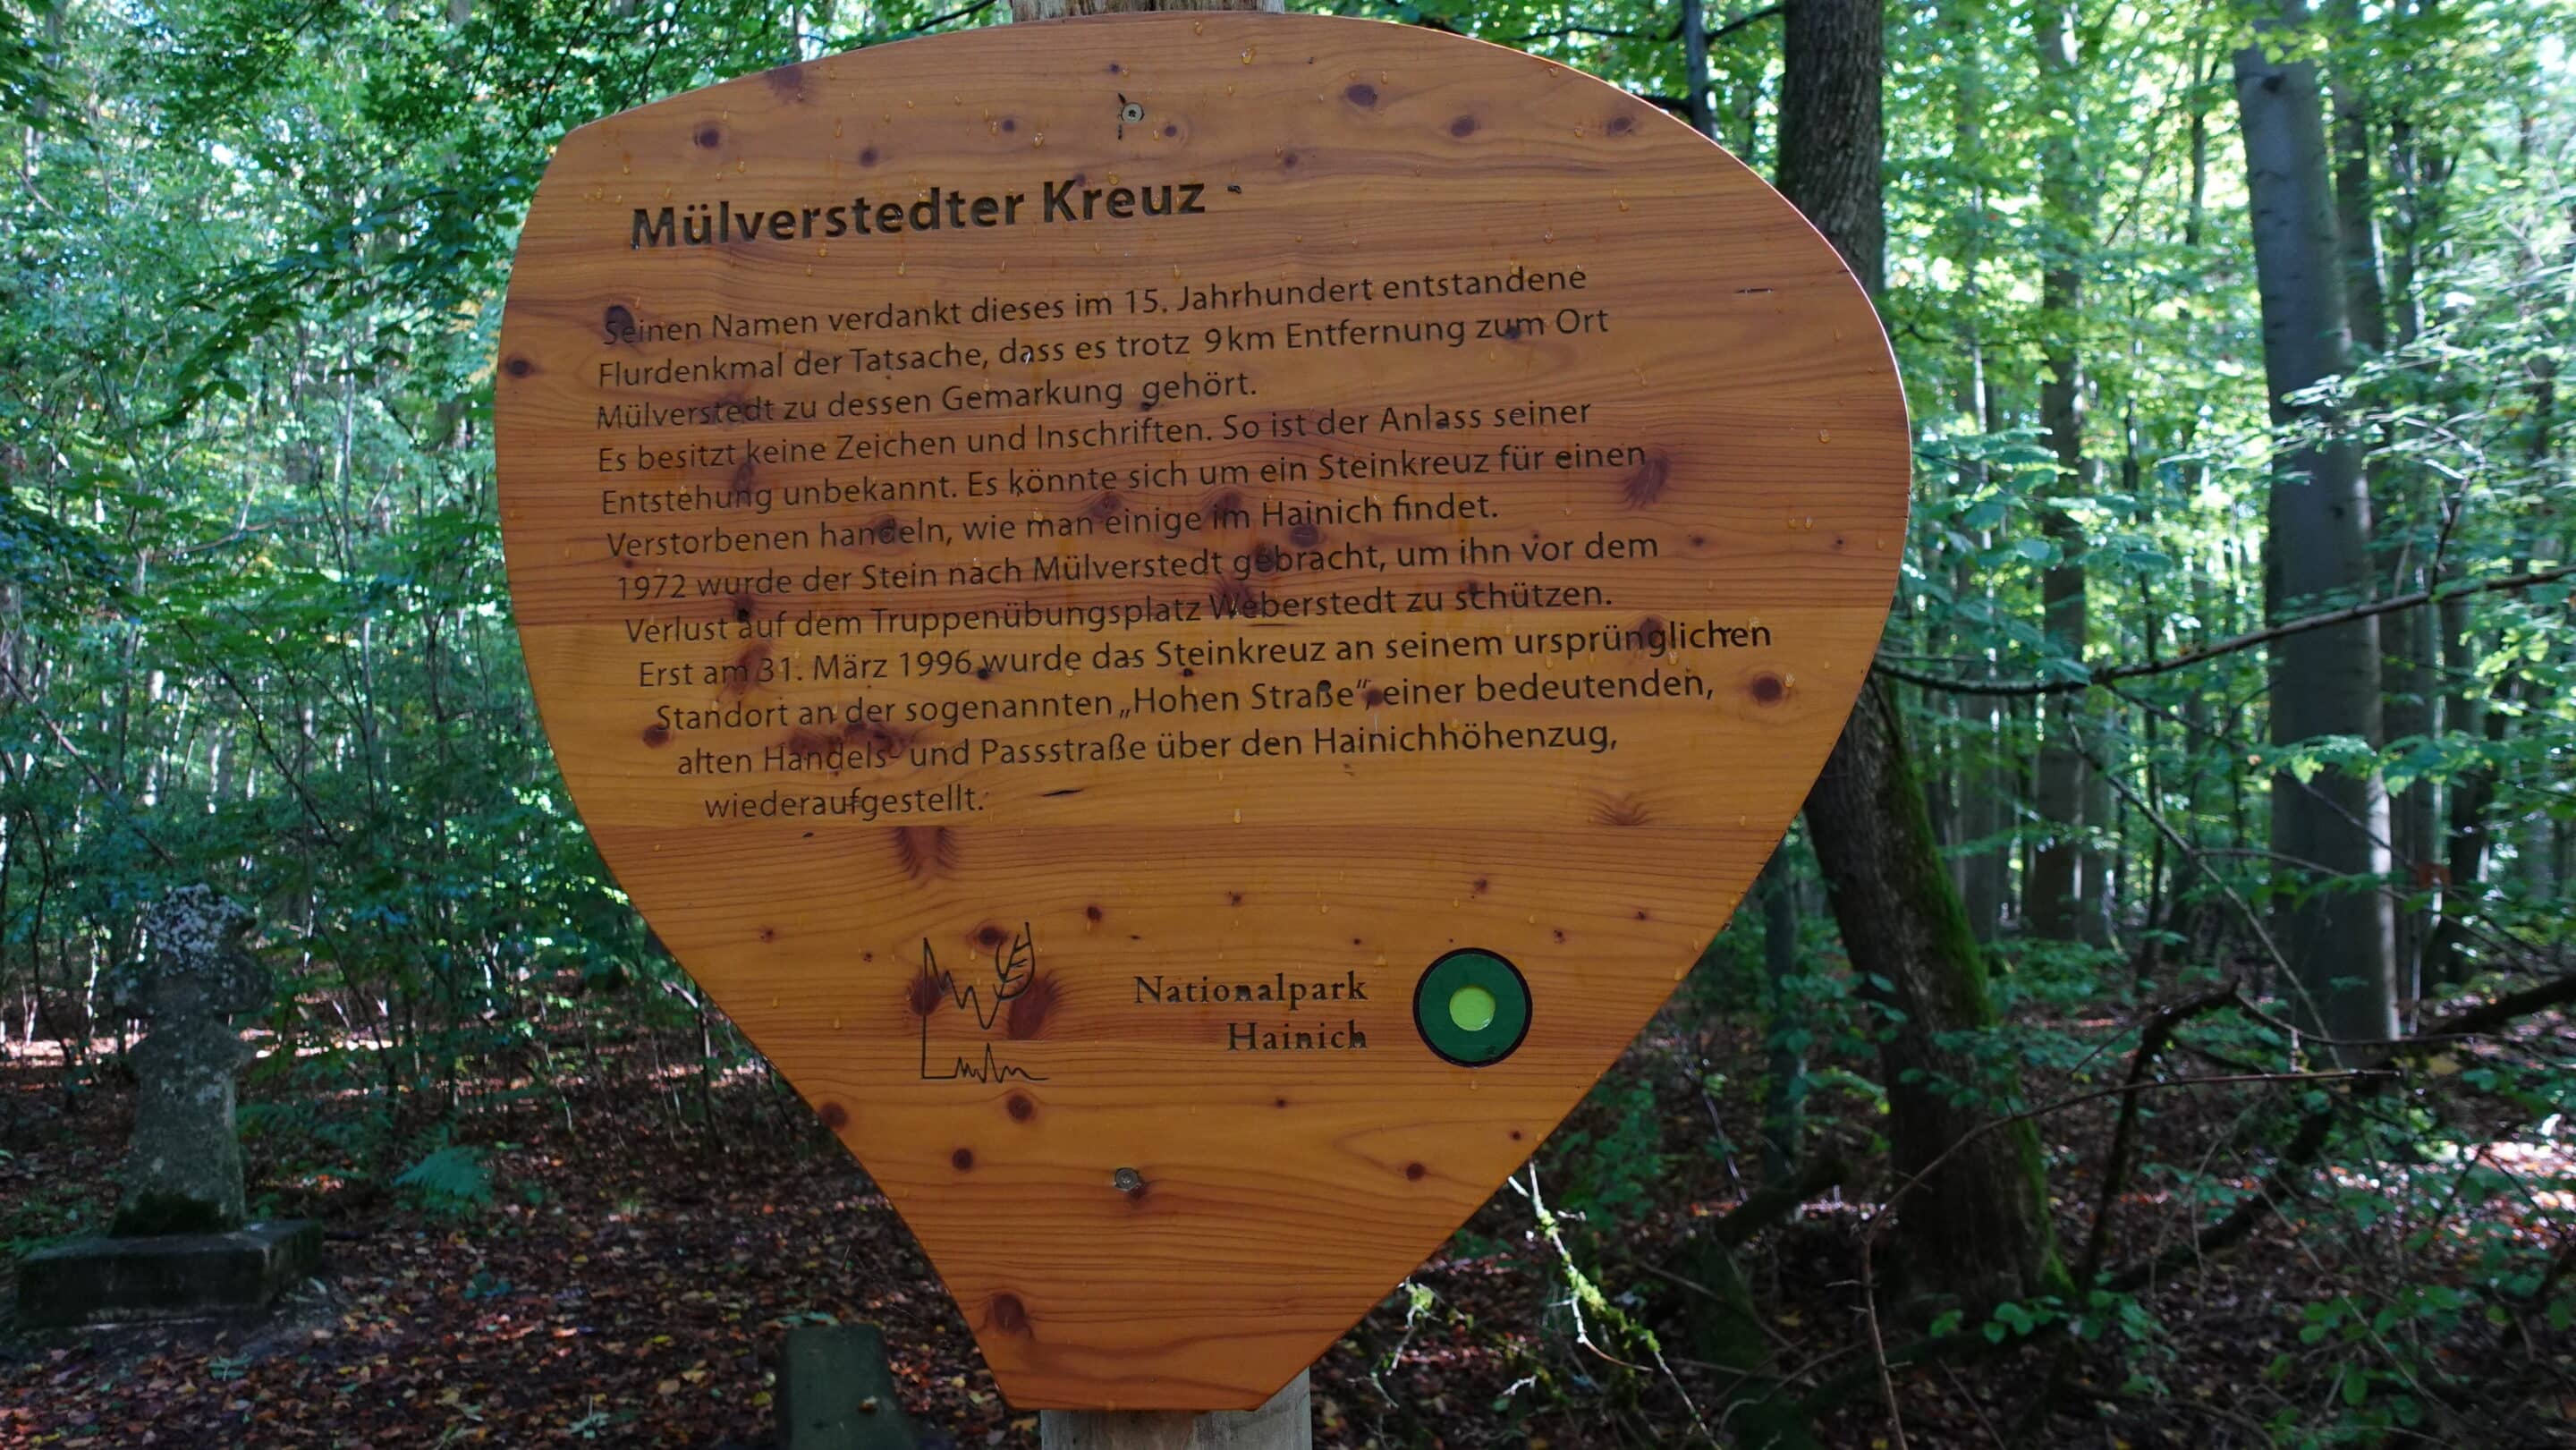 Hinweisschild zum Mülverstedter Kreuz im Buchenwald Hainich einem Nationalpark bei Eisenach in Westthüringen.